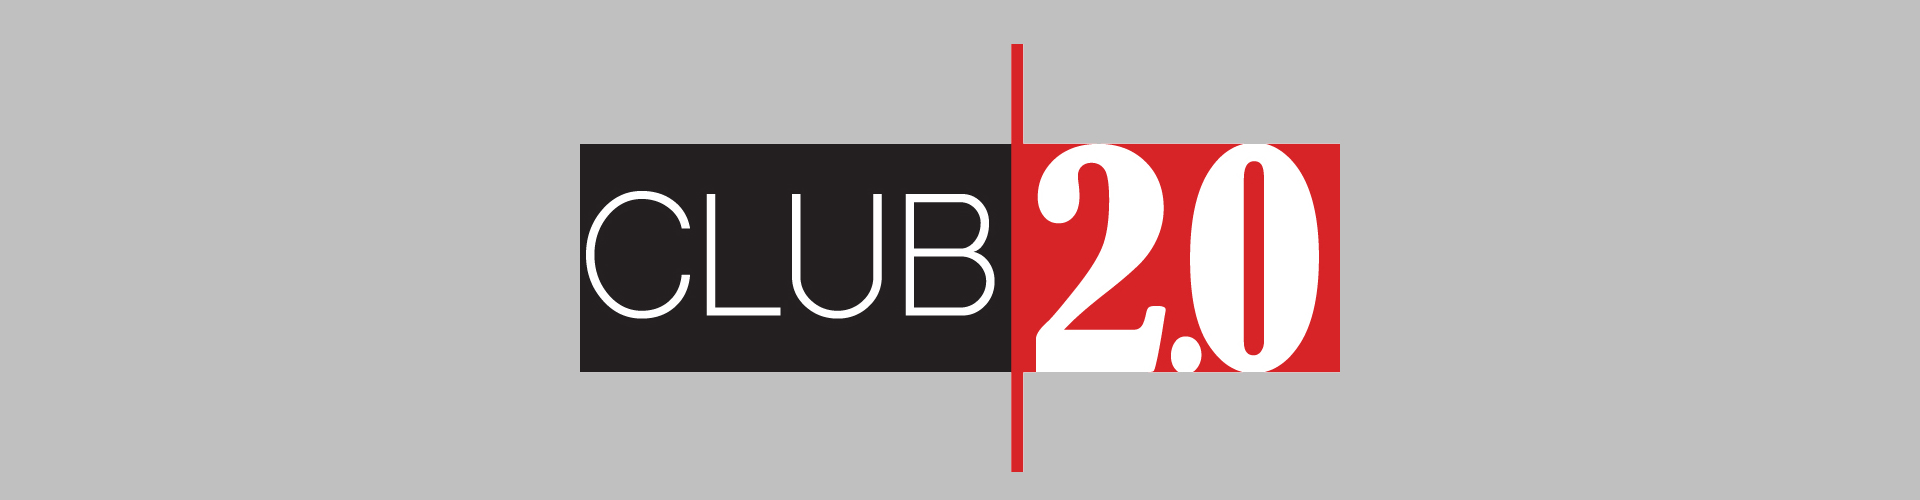 27.10.2017 Club 2.0: Termine bis zum neuen Jahr stehen fest!